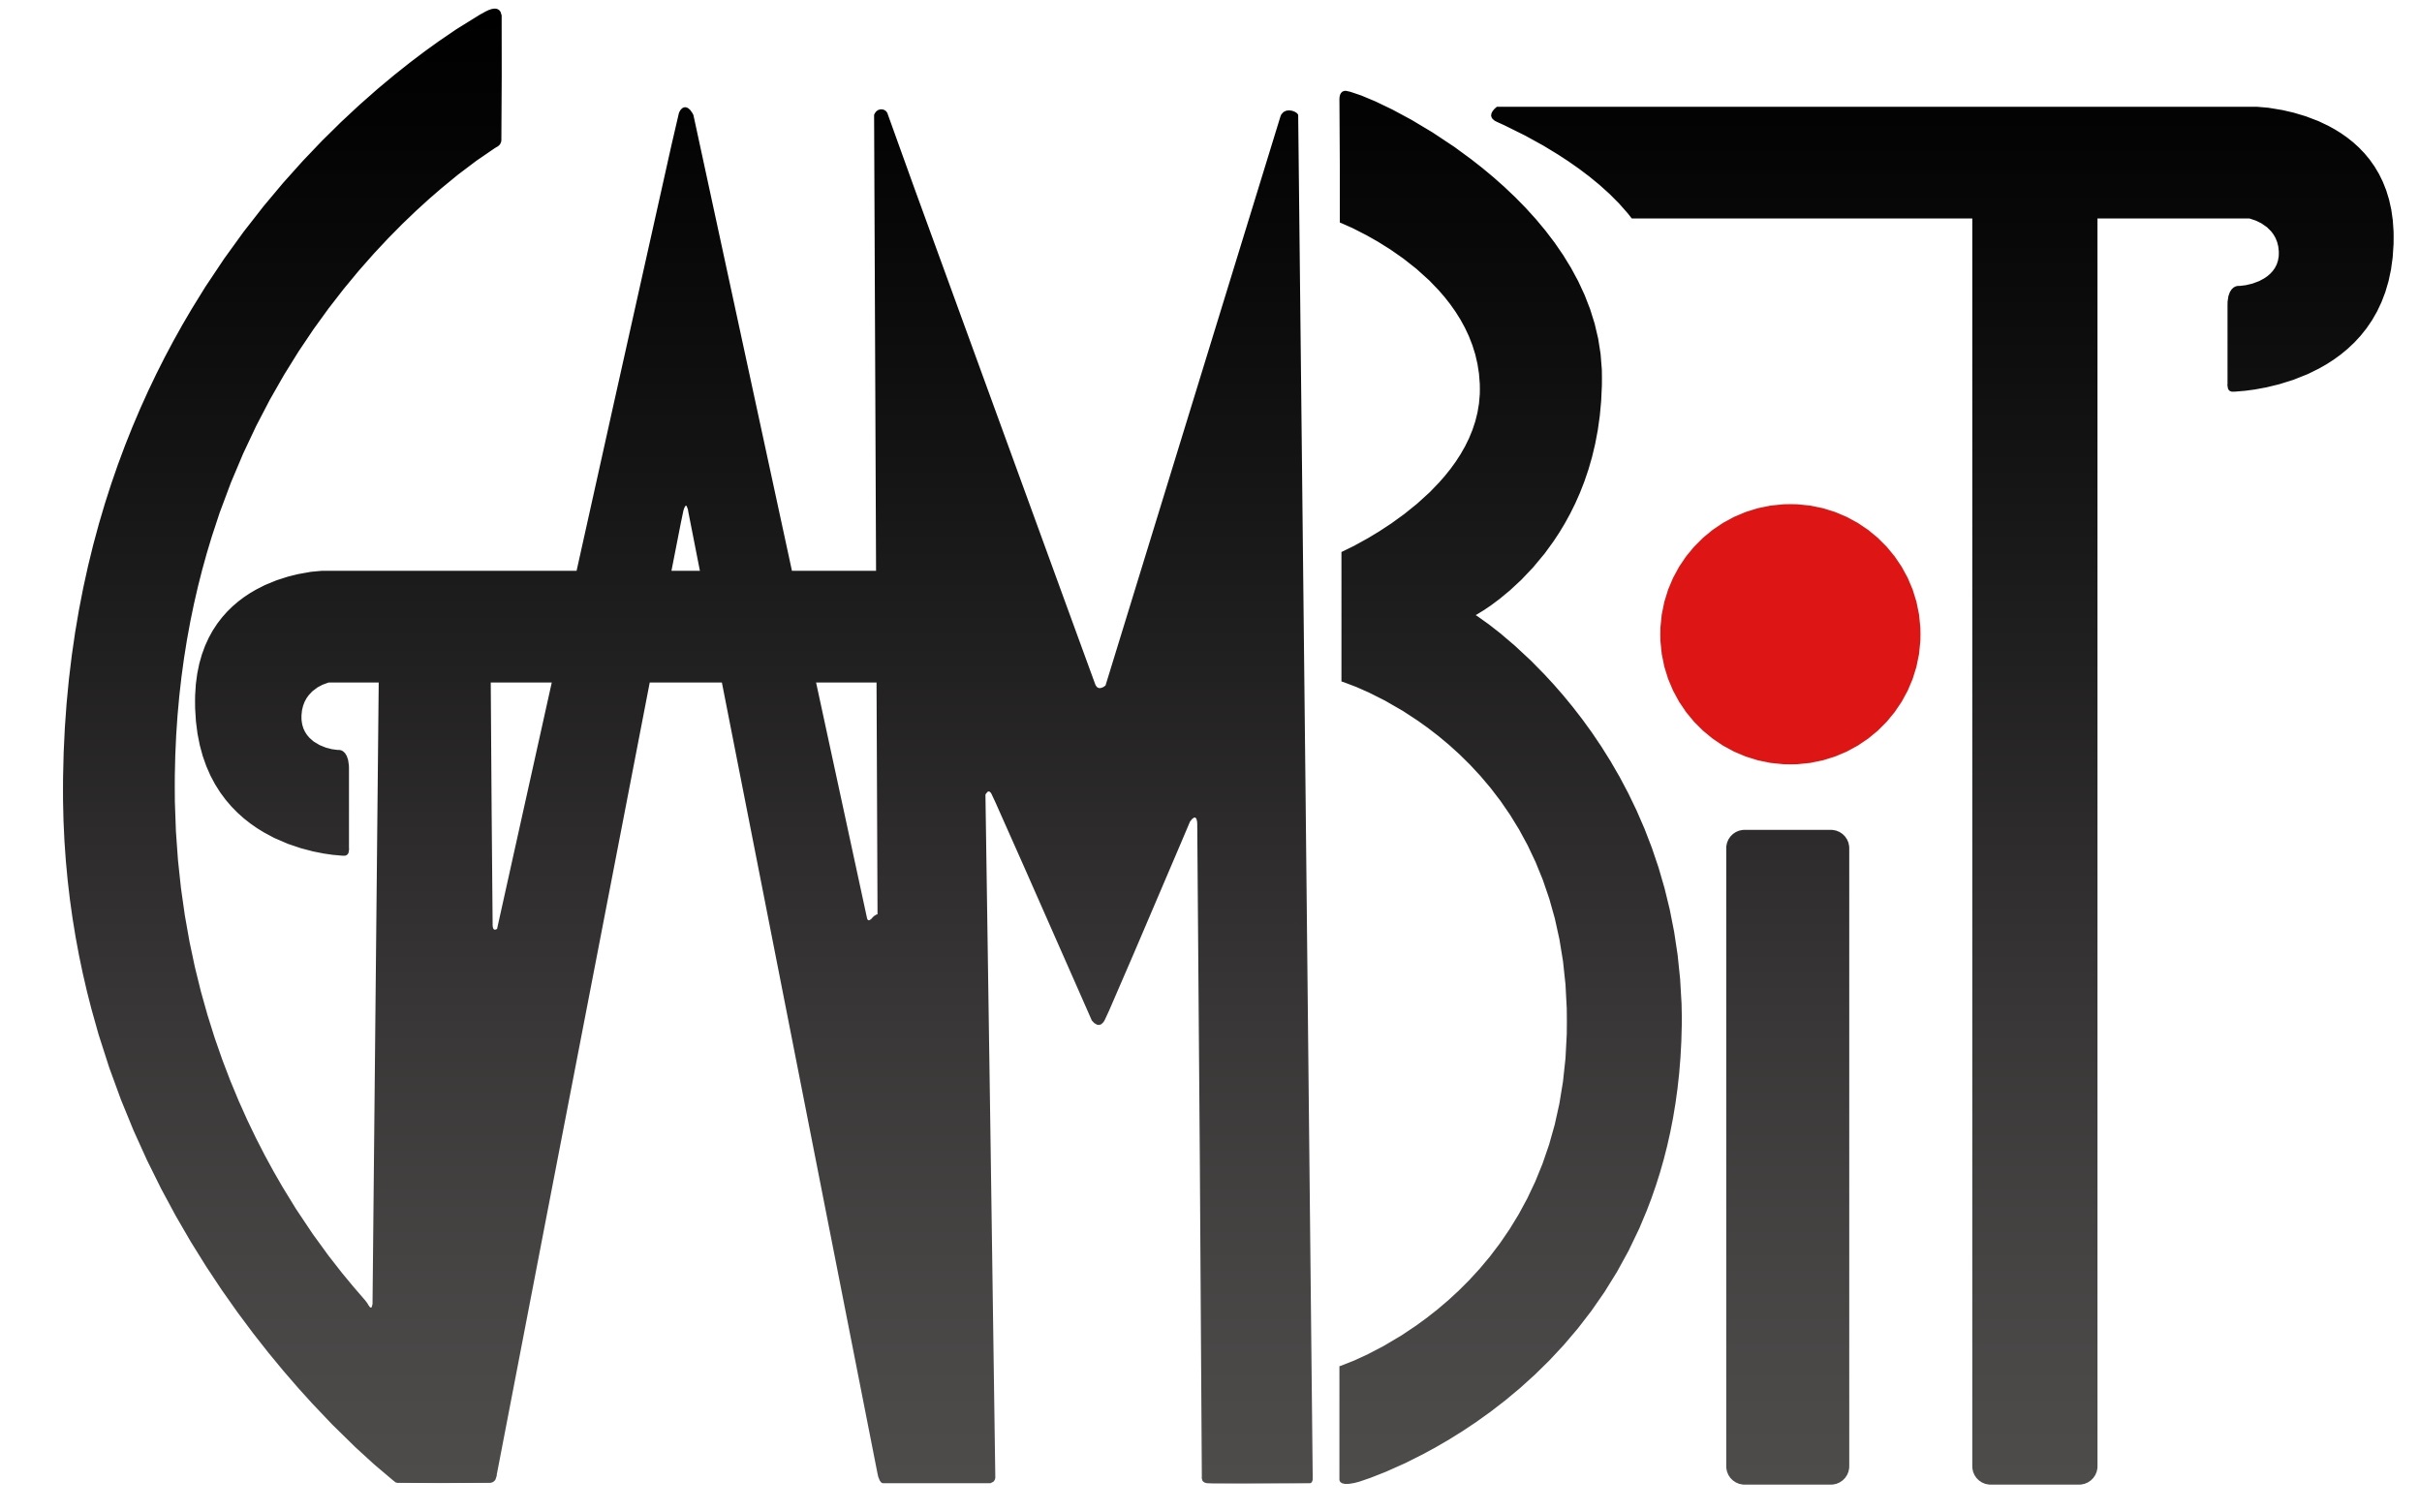 GAMBIT Logo.jpg 1cf5942ed0f3a2053a779bdd1c728489